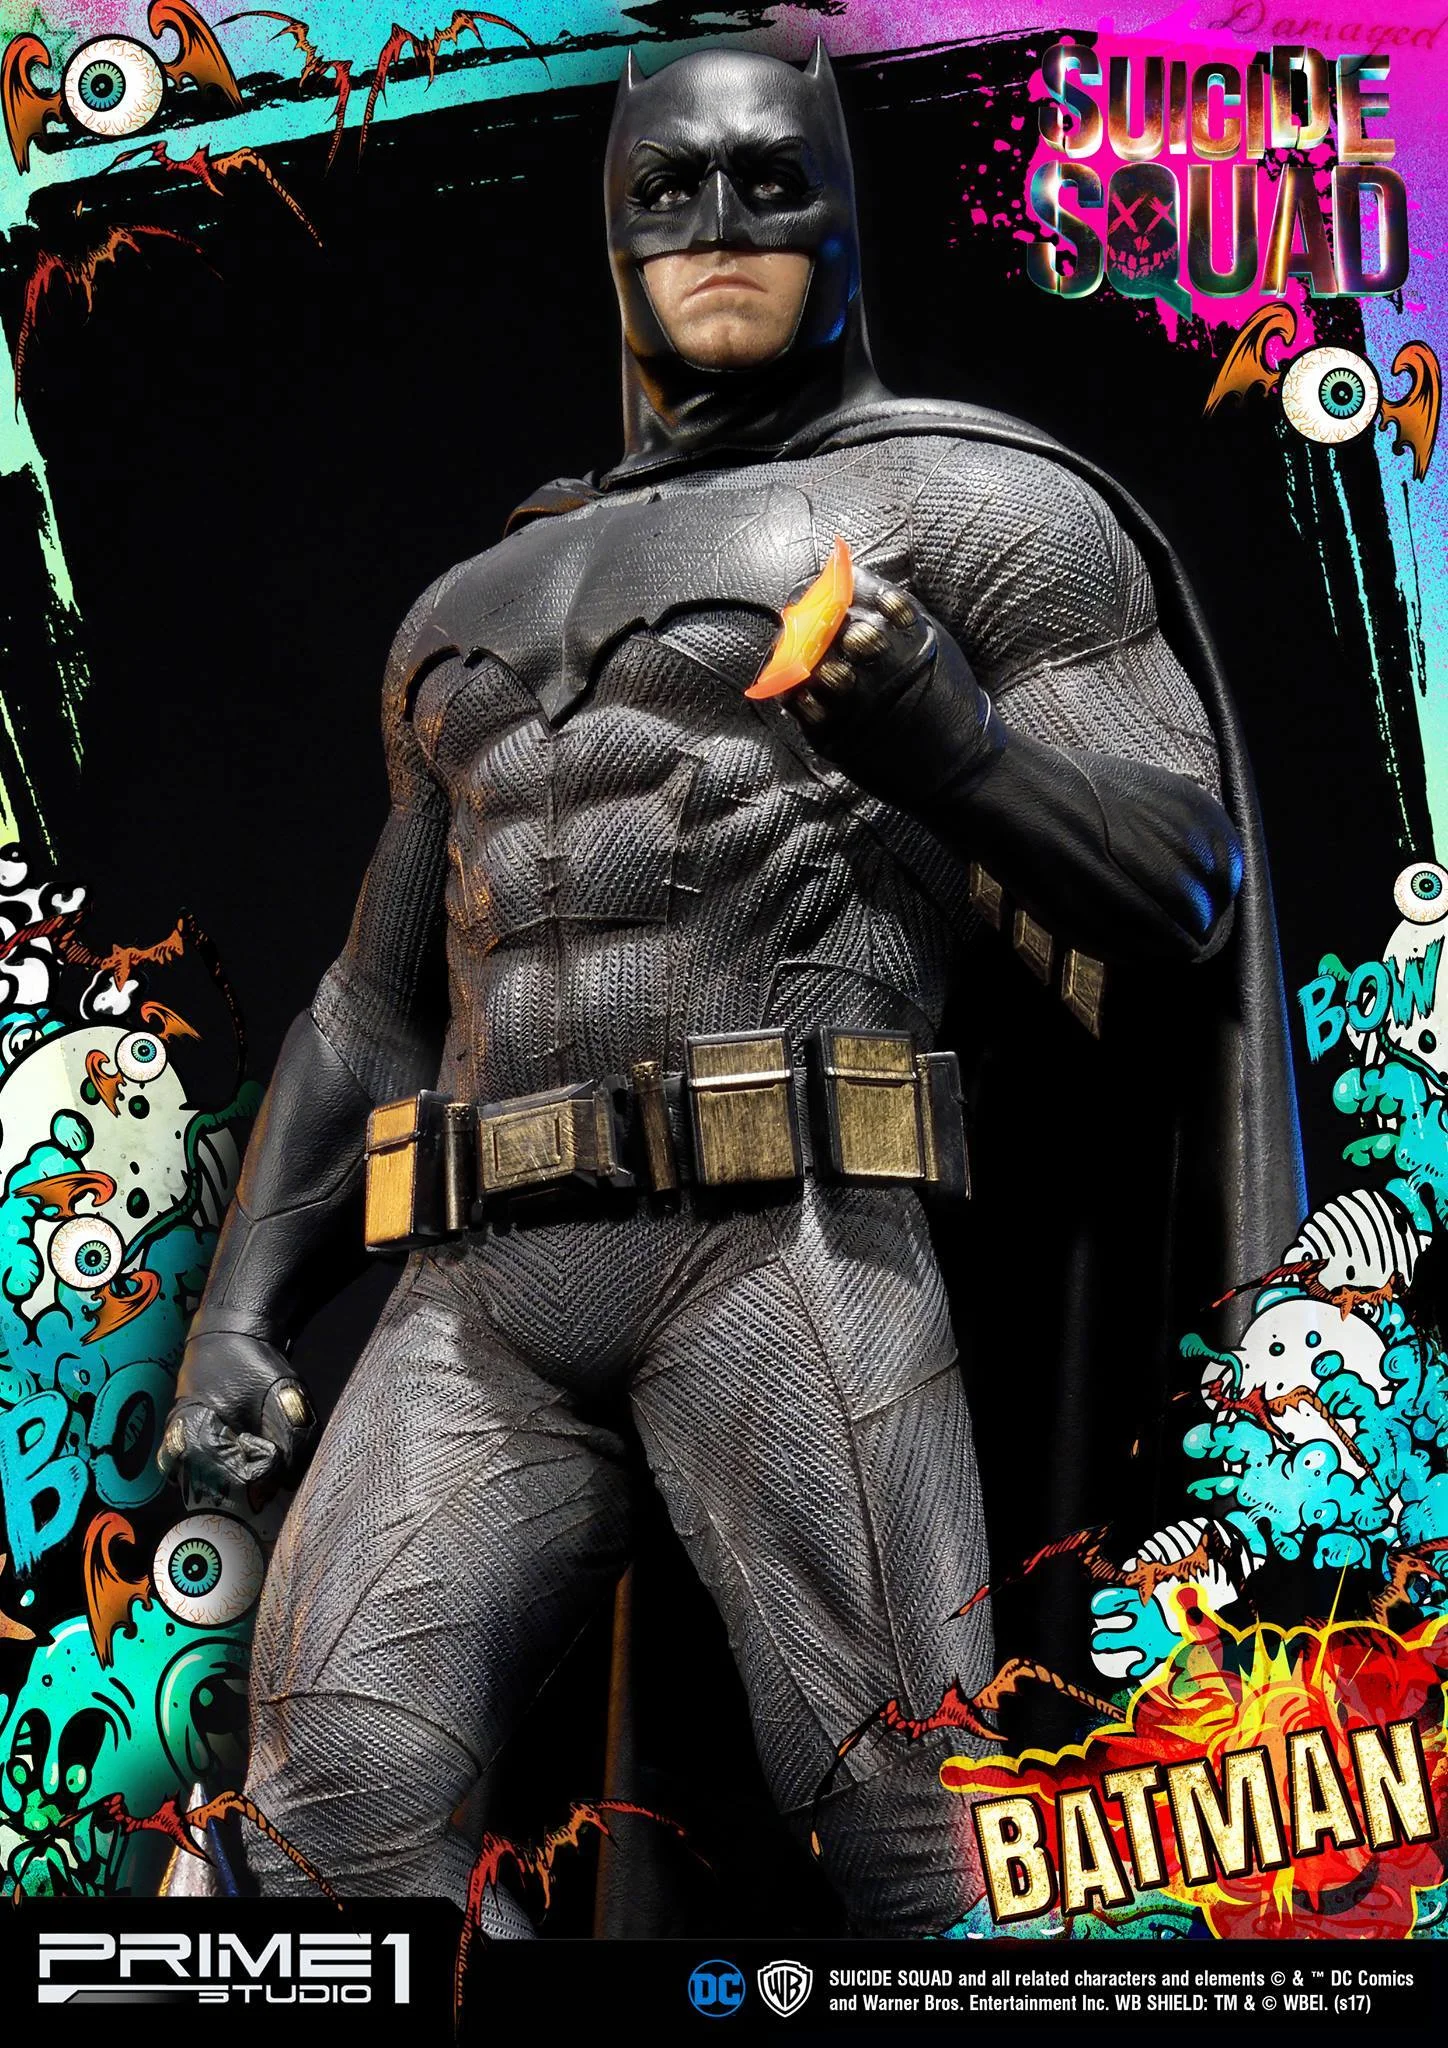 Из-за улыбки статуя Бэтмена из Suicide Squad выглядит очень смешно - фото 1